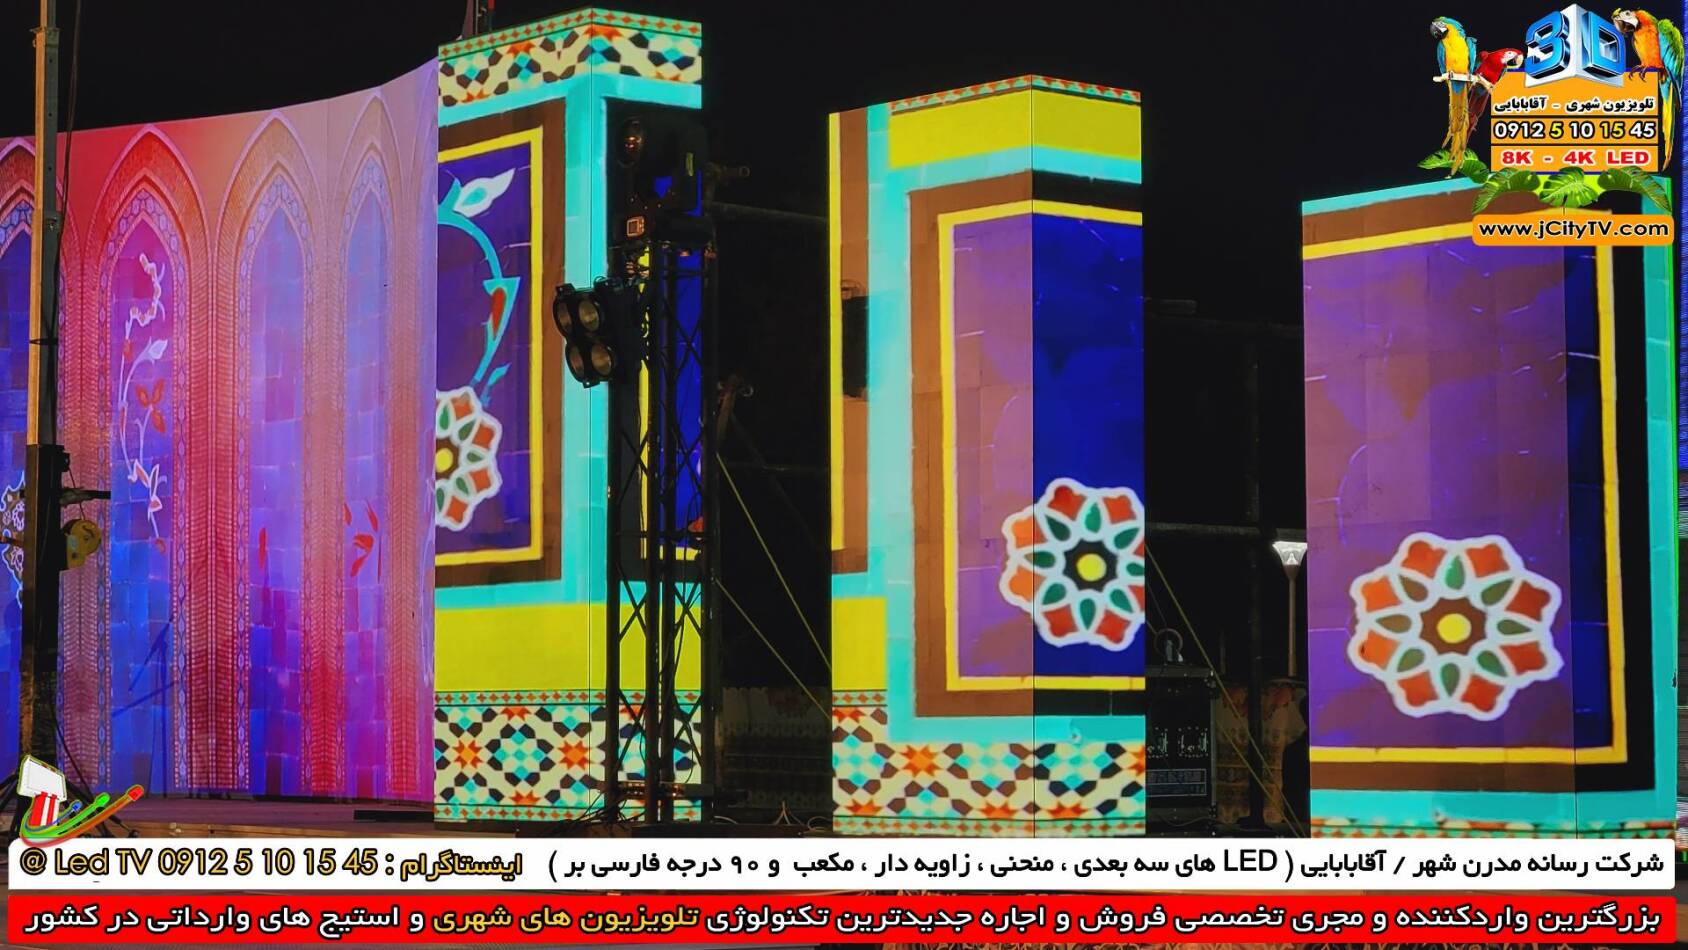 تلویزیون شهری فارسی بر 90 درجه مکعبی